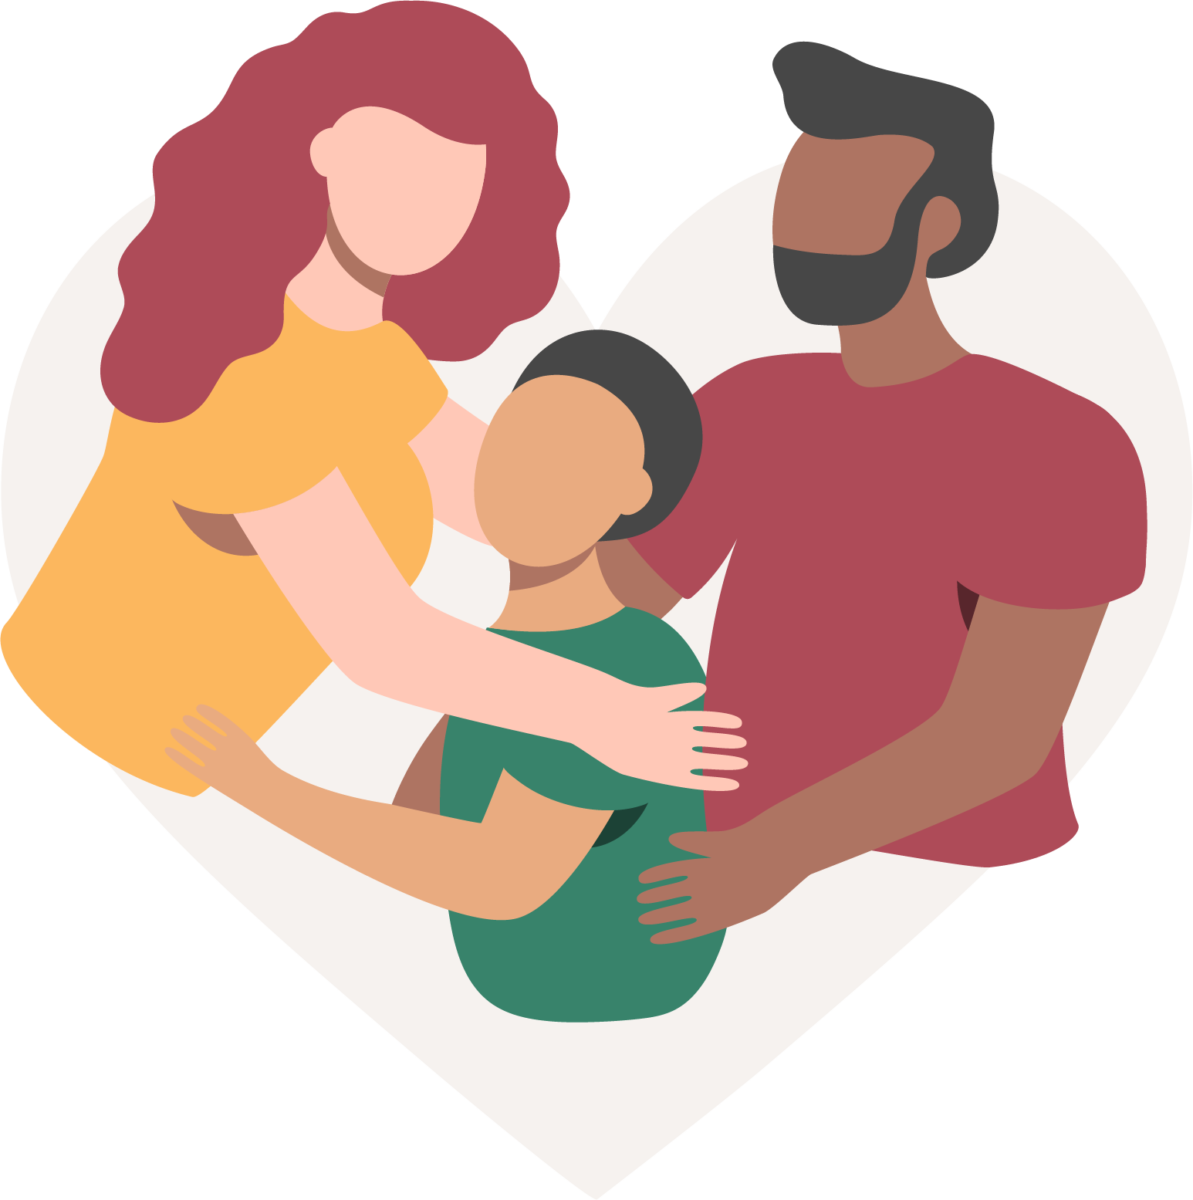 une femme aux cheveux rouges et une chemise jaune et un homme aux cheveux noirs et à la barbe embrassent un enfant avec une chemise verte et des cheveux noirs représentant une unité familiale